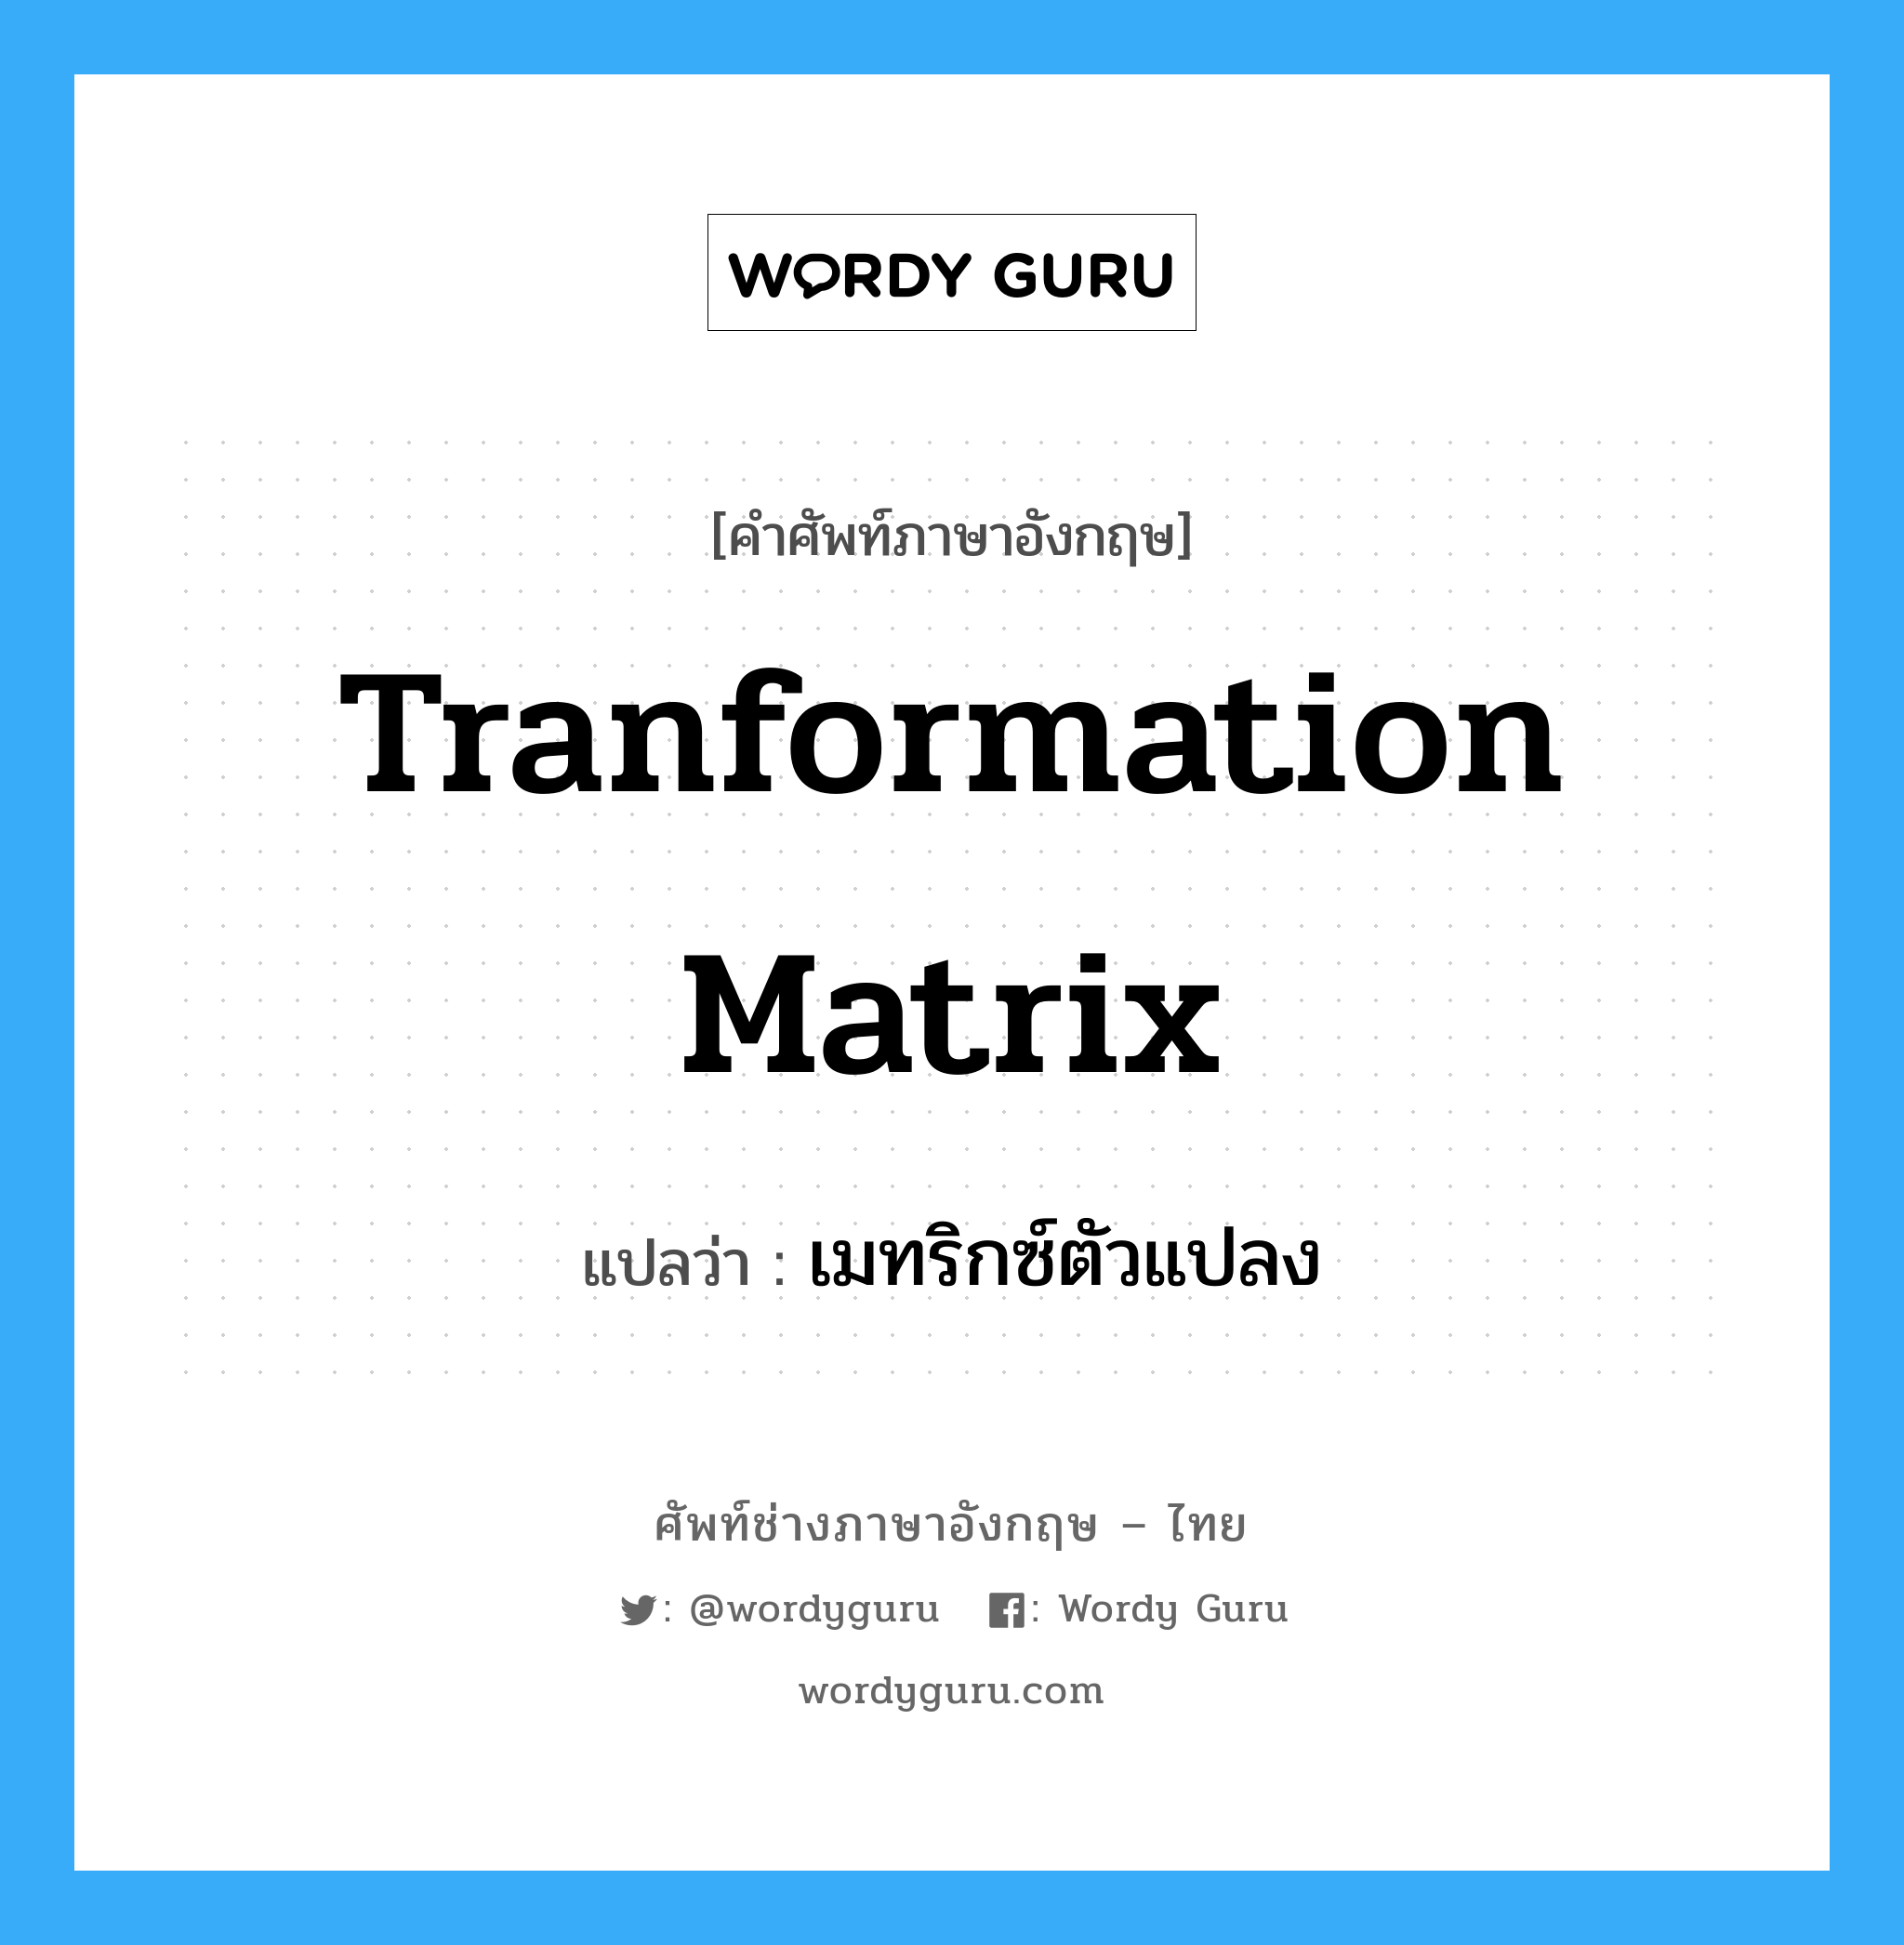 เมทริกซ์ตัวแปลง ภาษาอังกฤษ?, คำศัพท์ช่างภาษาอังกฤษ - ไทย เมทริกซ์ตัวแปลง คำศัพท์ภาษาอังกฤษ เมทริกซ์ตัวแปลง แปลว่า Tranformation Matrix